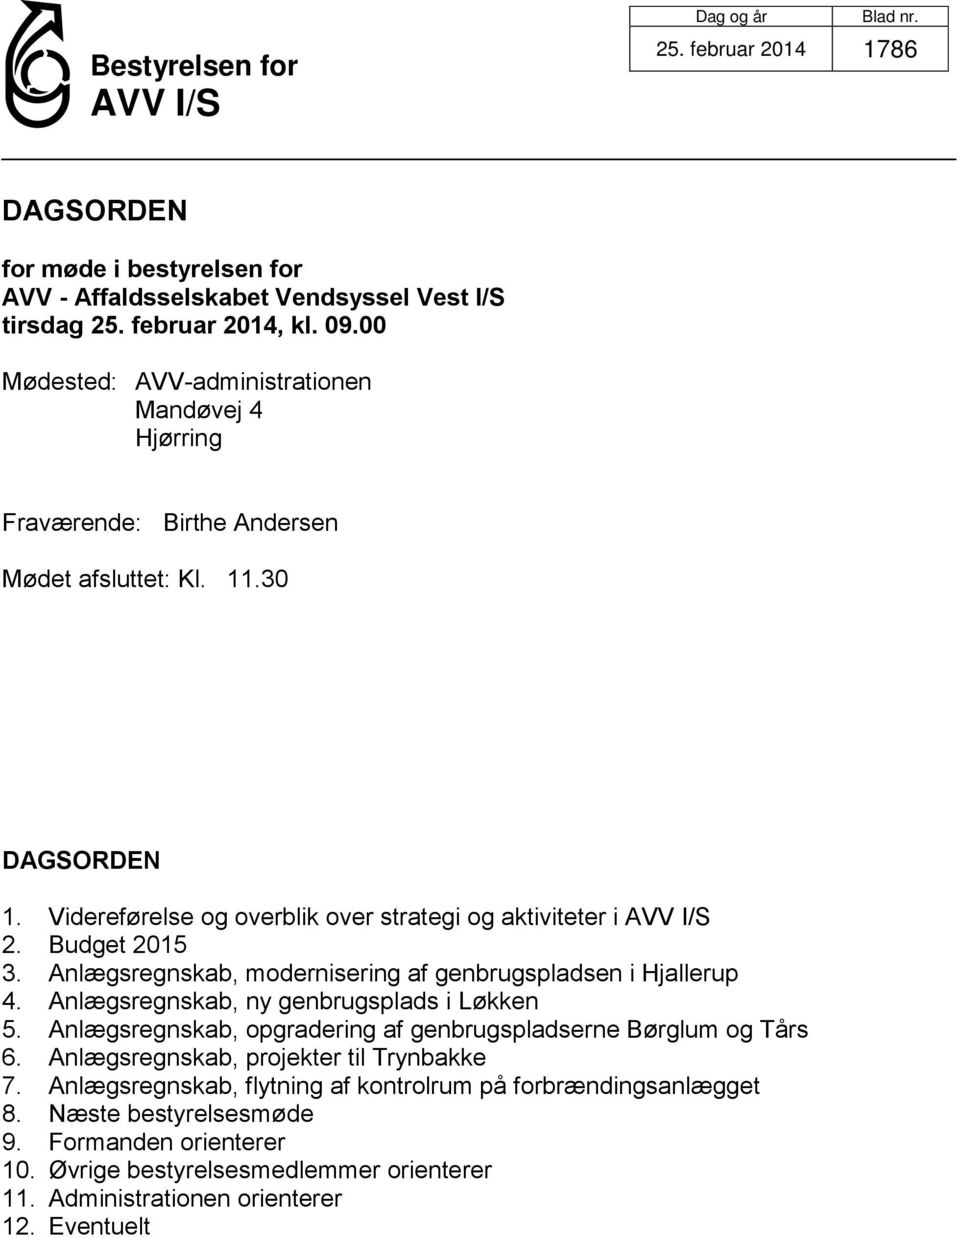 Budget 2015 3. Anlægsregnskab, modernisering af genbrugspladsen i Hjallerup 4. Anlægsregnskab, ny genbrugsplads i Løkken 5.